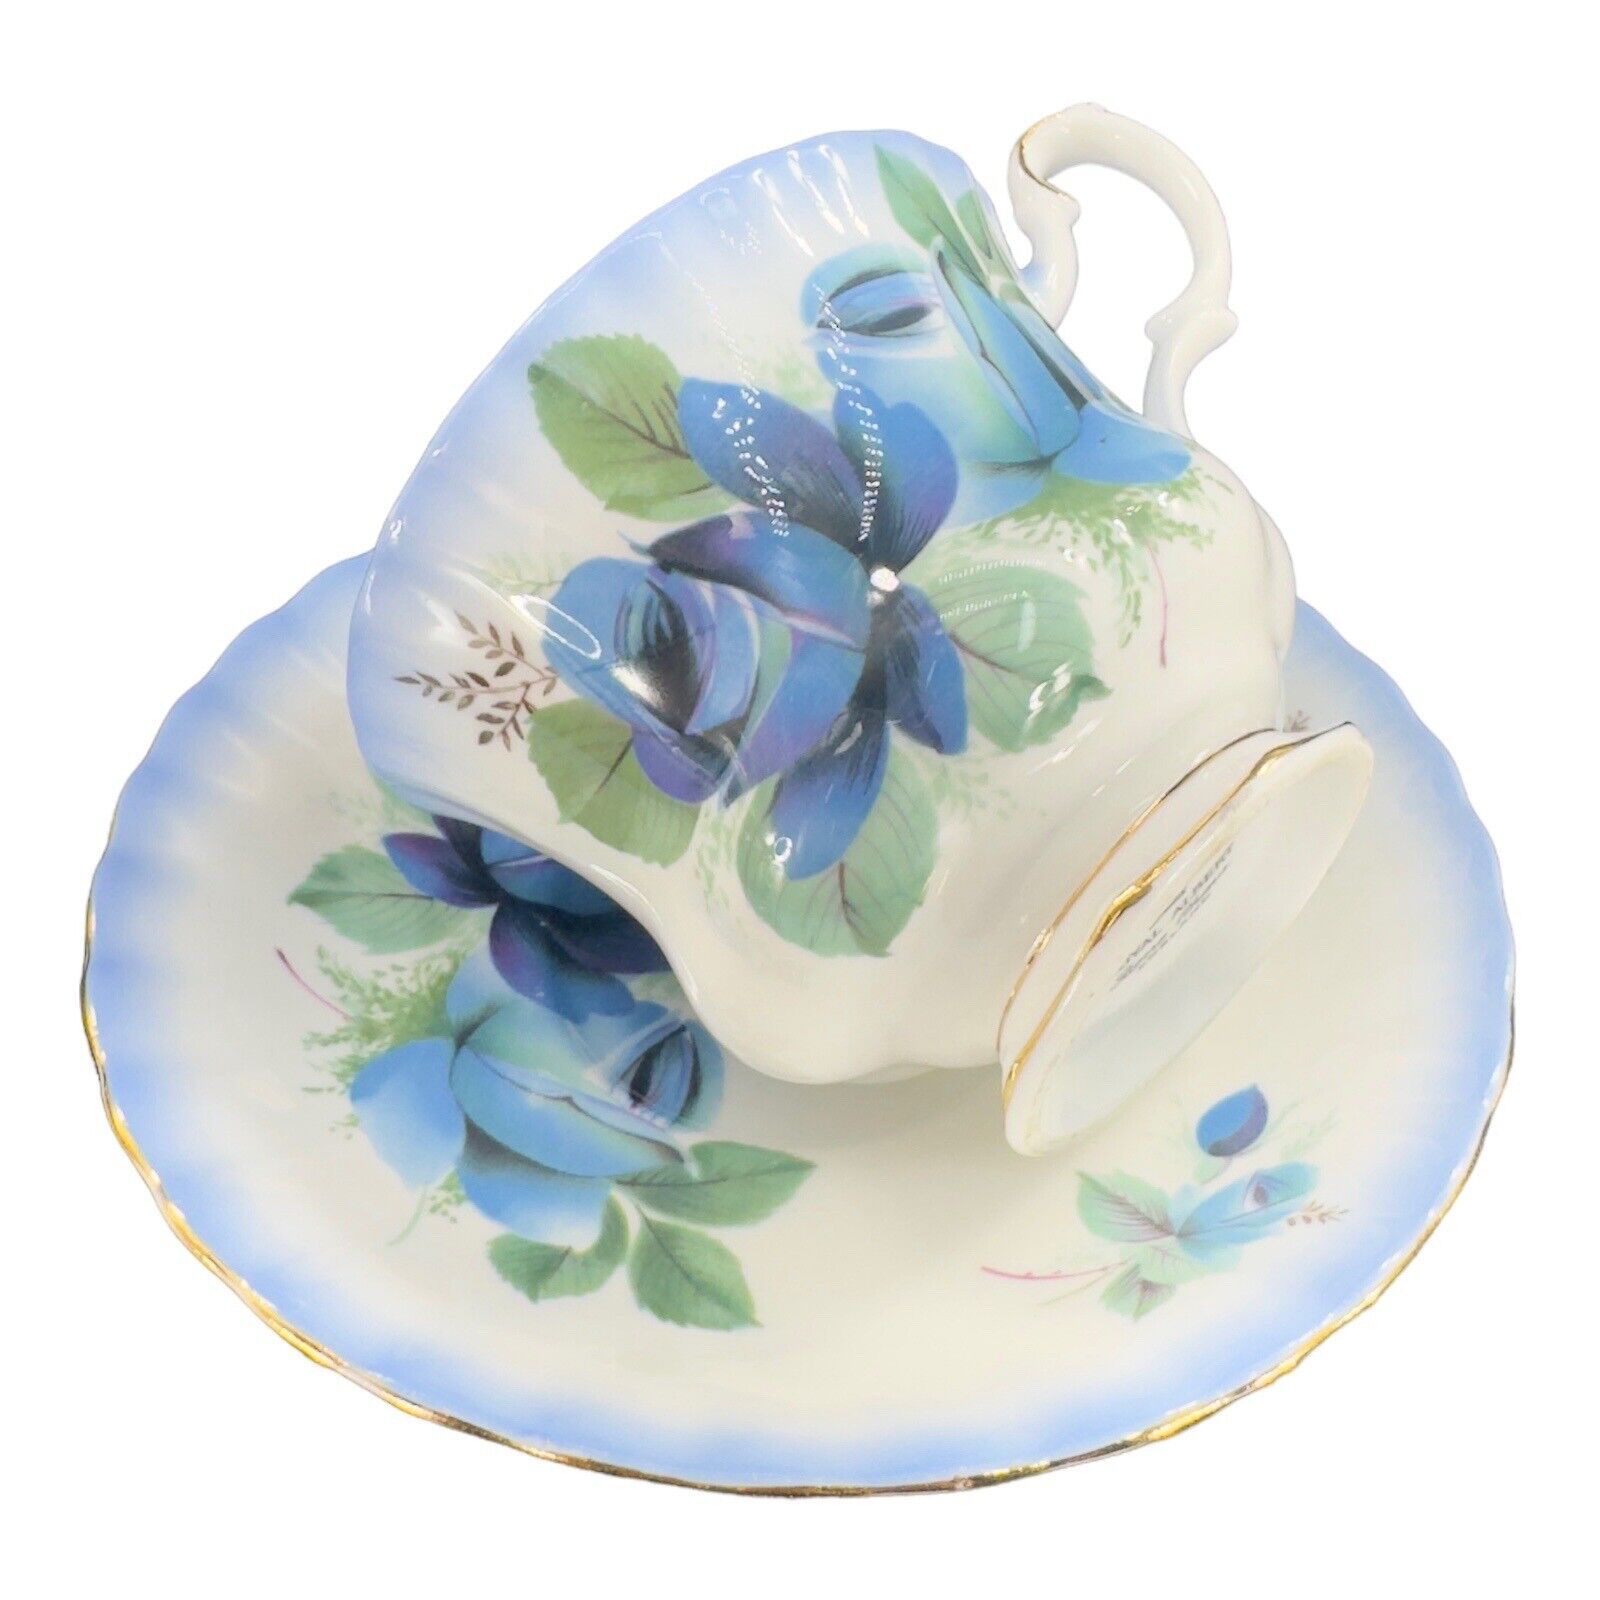 Vintage Royal Albert Porcelain Bone China Teacup And Saucer Set Blue Flowers VTG